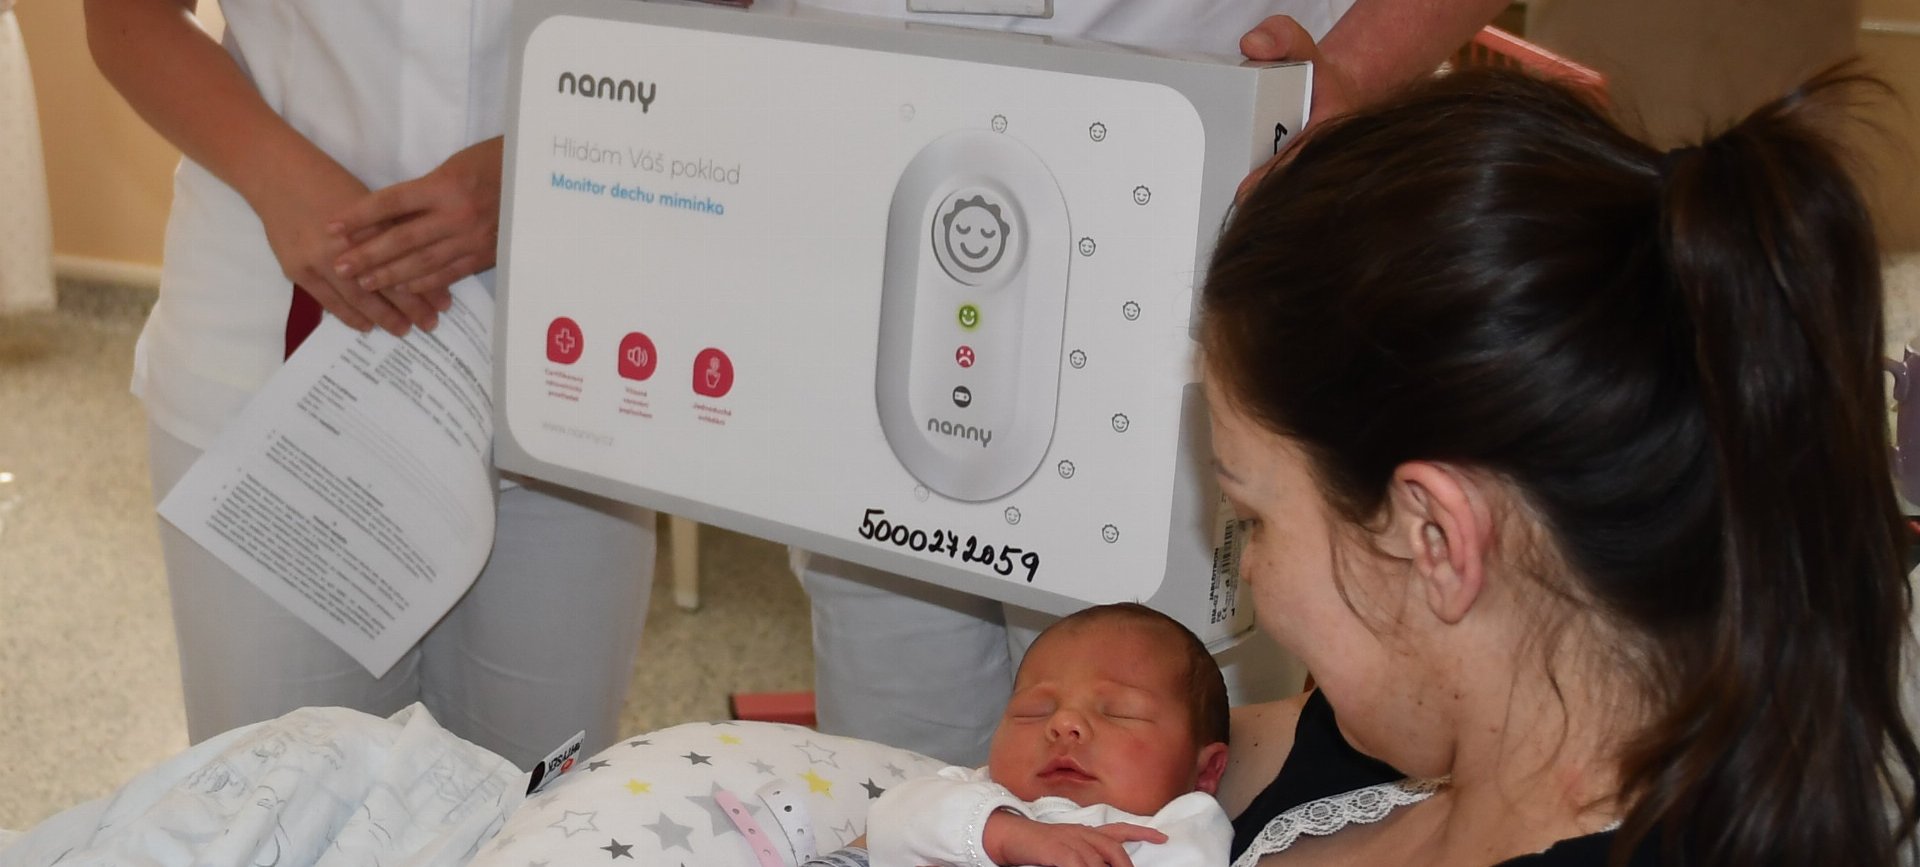 V krnovské porodnici nabízí zapůjčení monitoru dechu zdarma